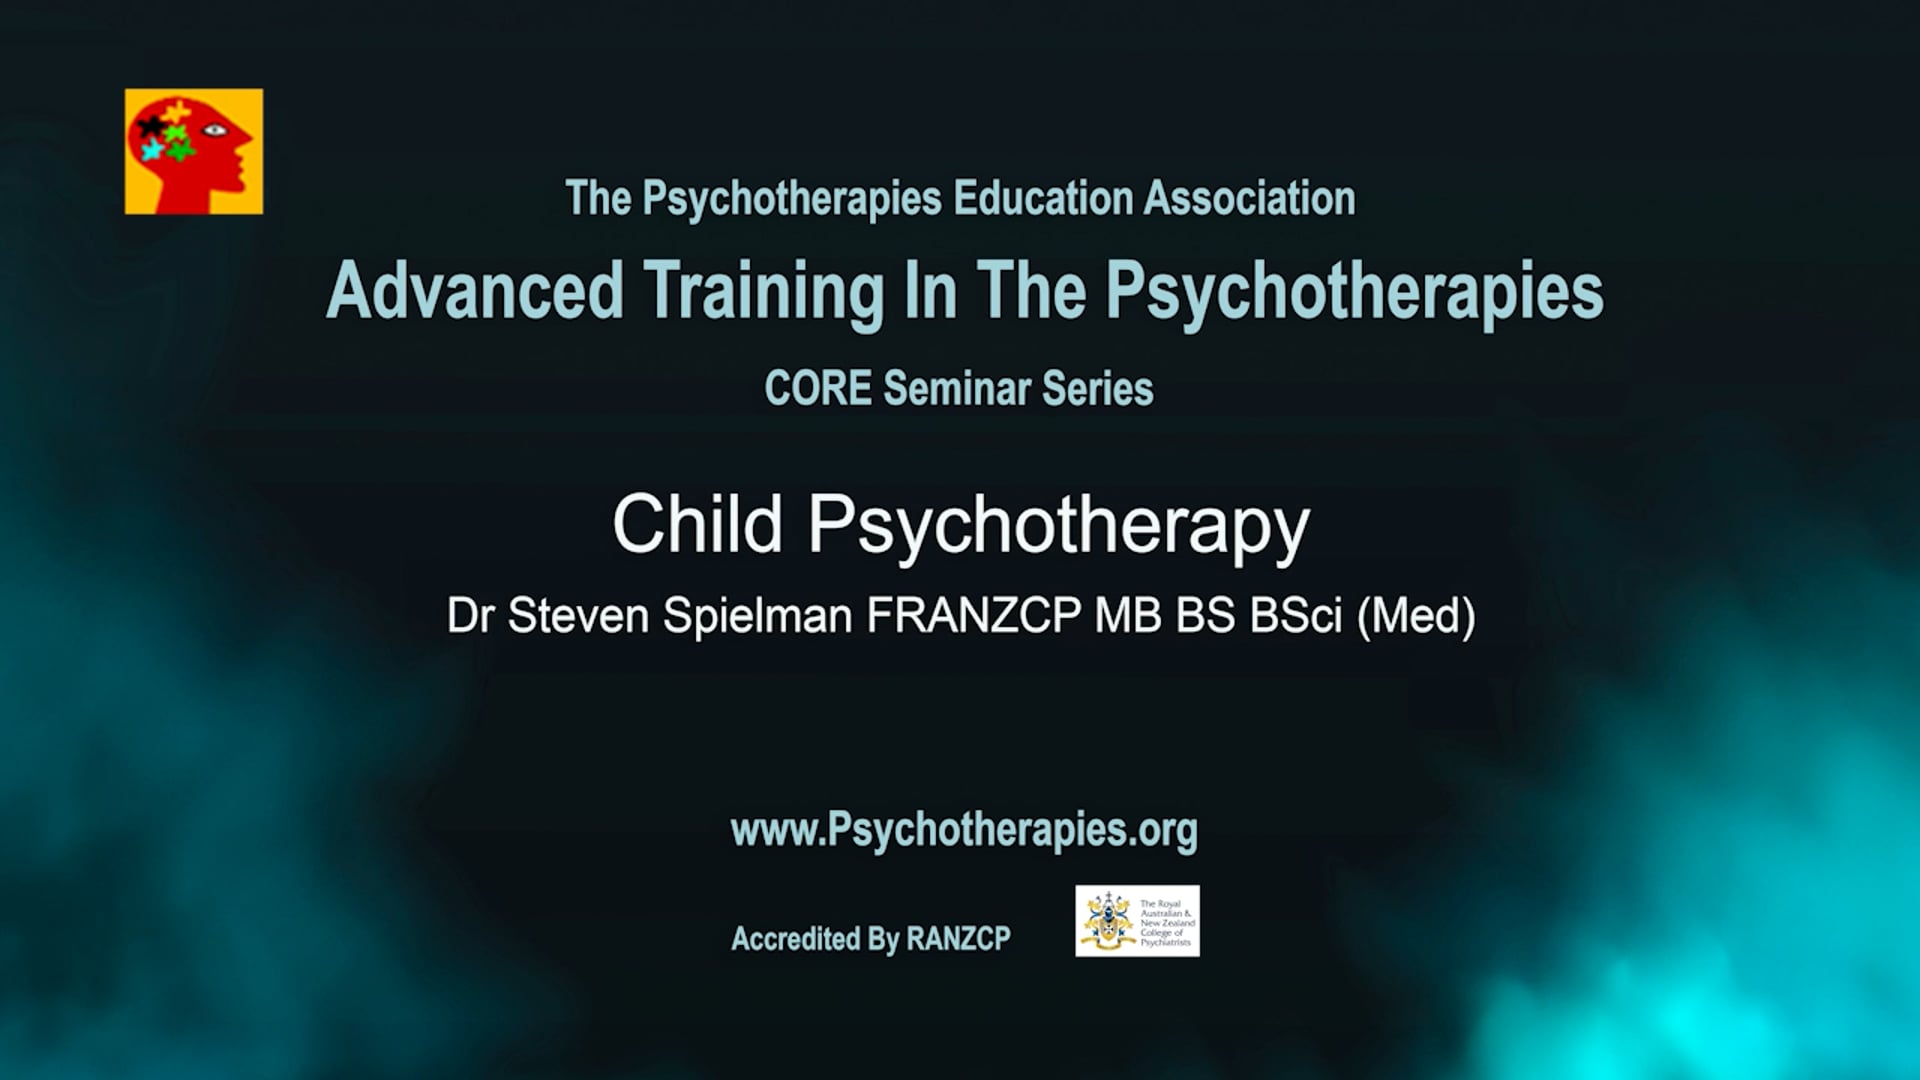 Child Psychotherapy_Dr Steven Spielman